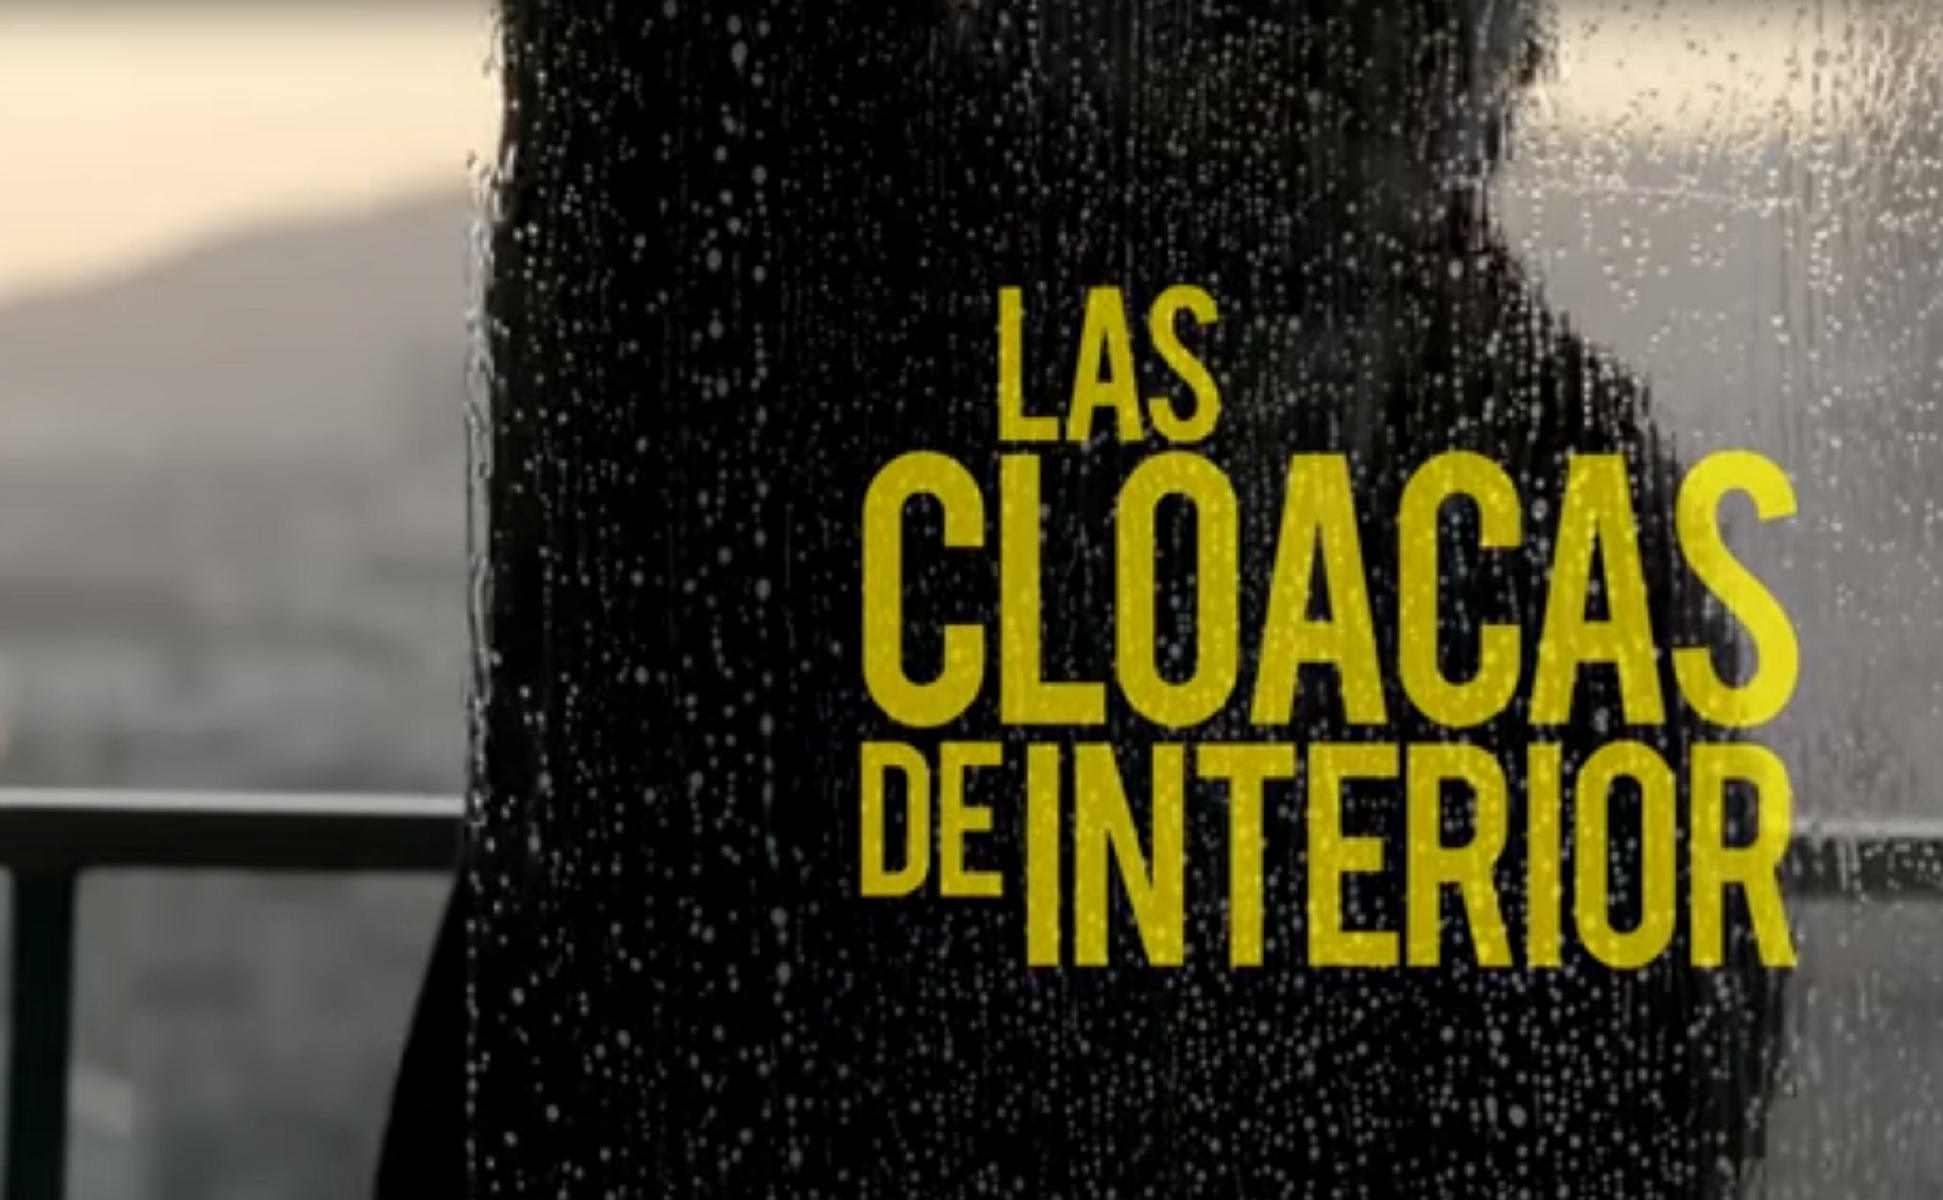 'Las Cloacas de Interior' arrasa en TV3 con un 30% de 'share'